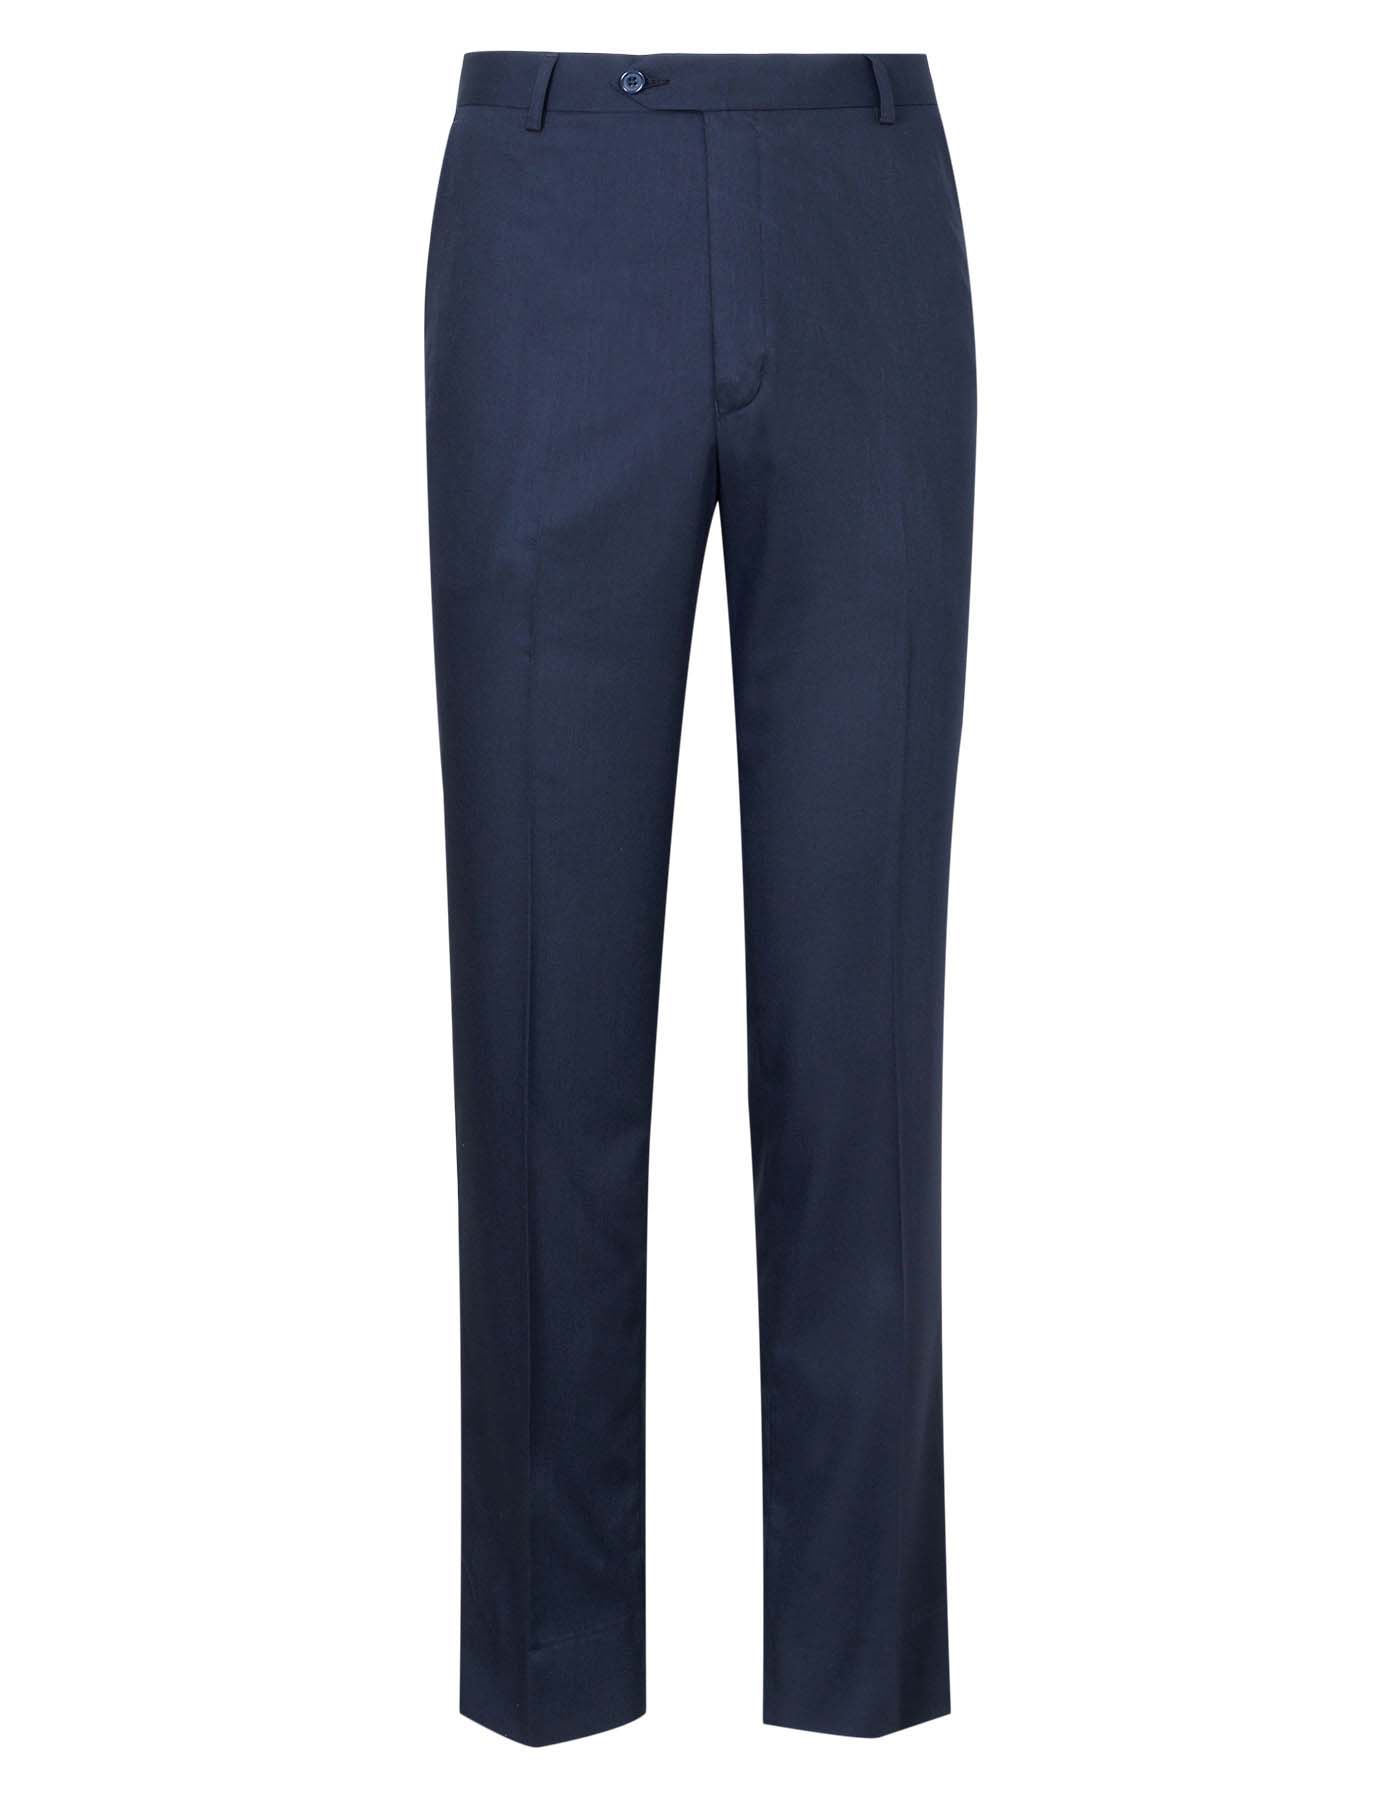 Navy Blue Plain Regular Fit Formal Trouser